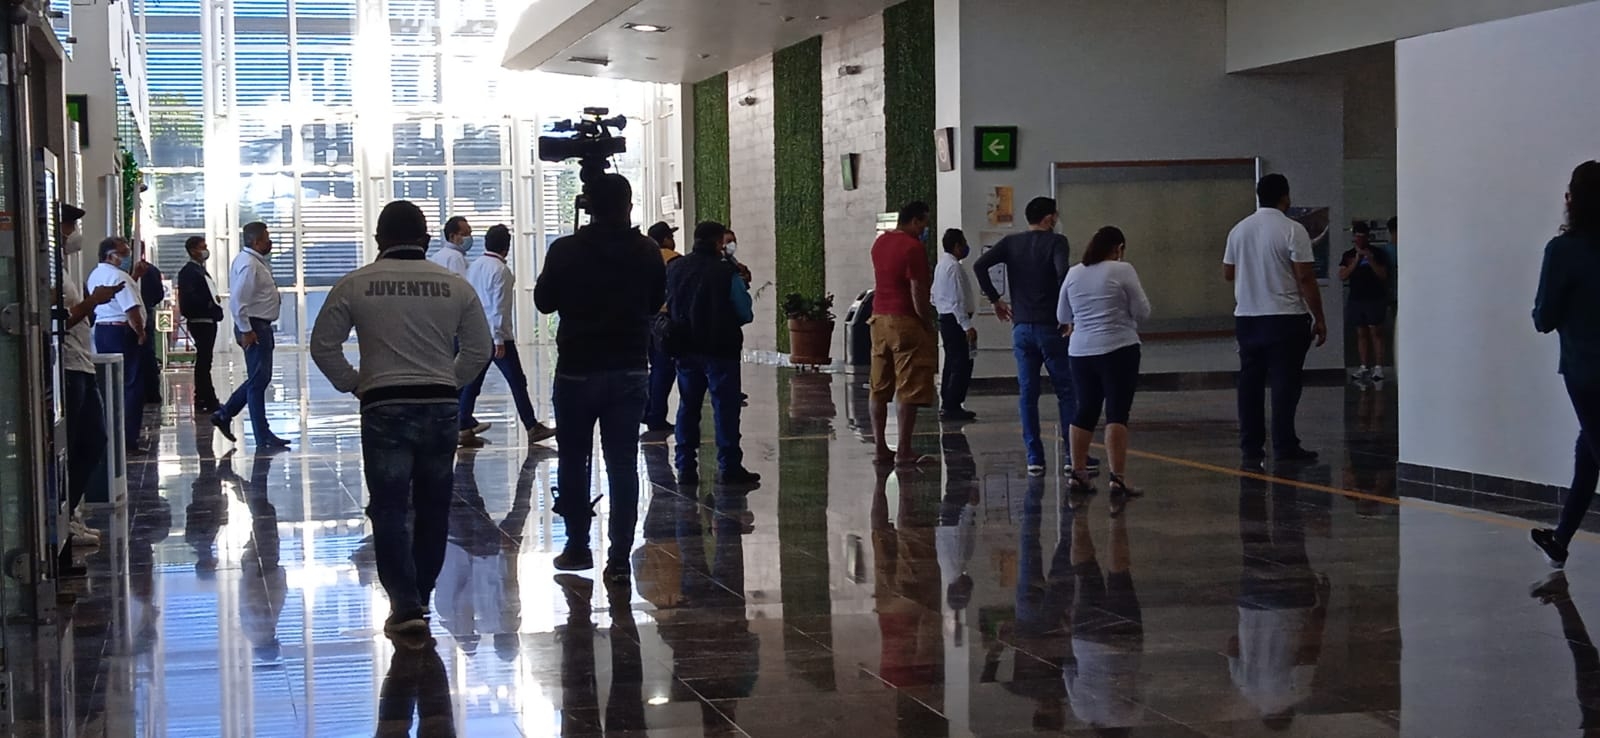 Arriban 160 pasajeros al aeropuerto de Campeche previo a Nochebuena: VIDEO